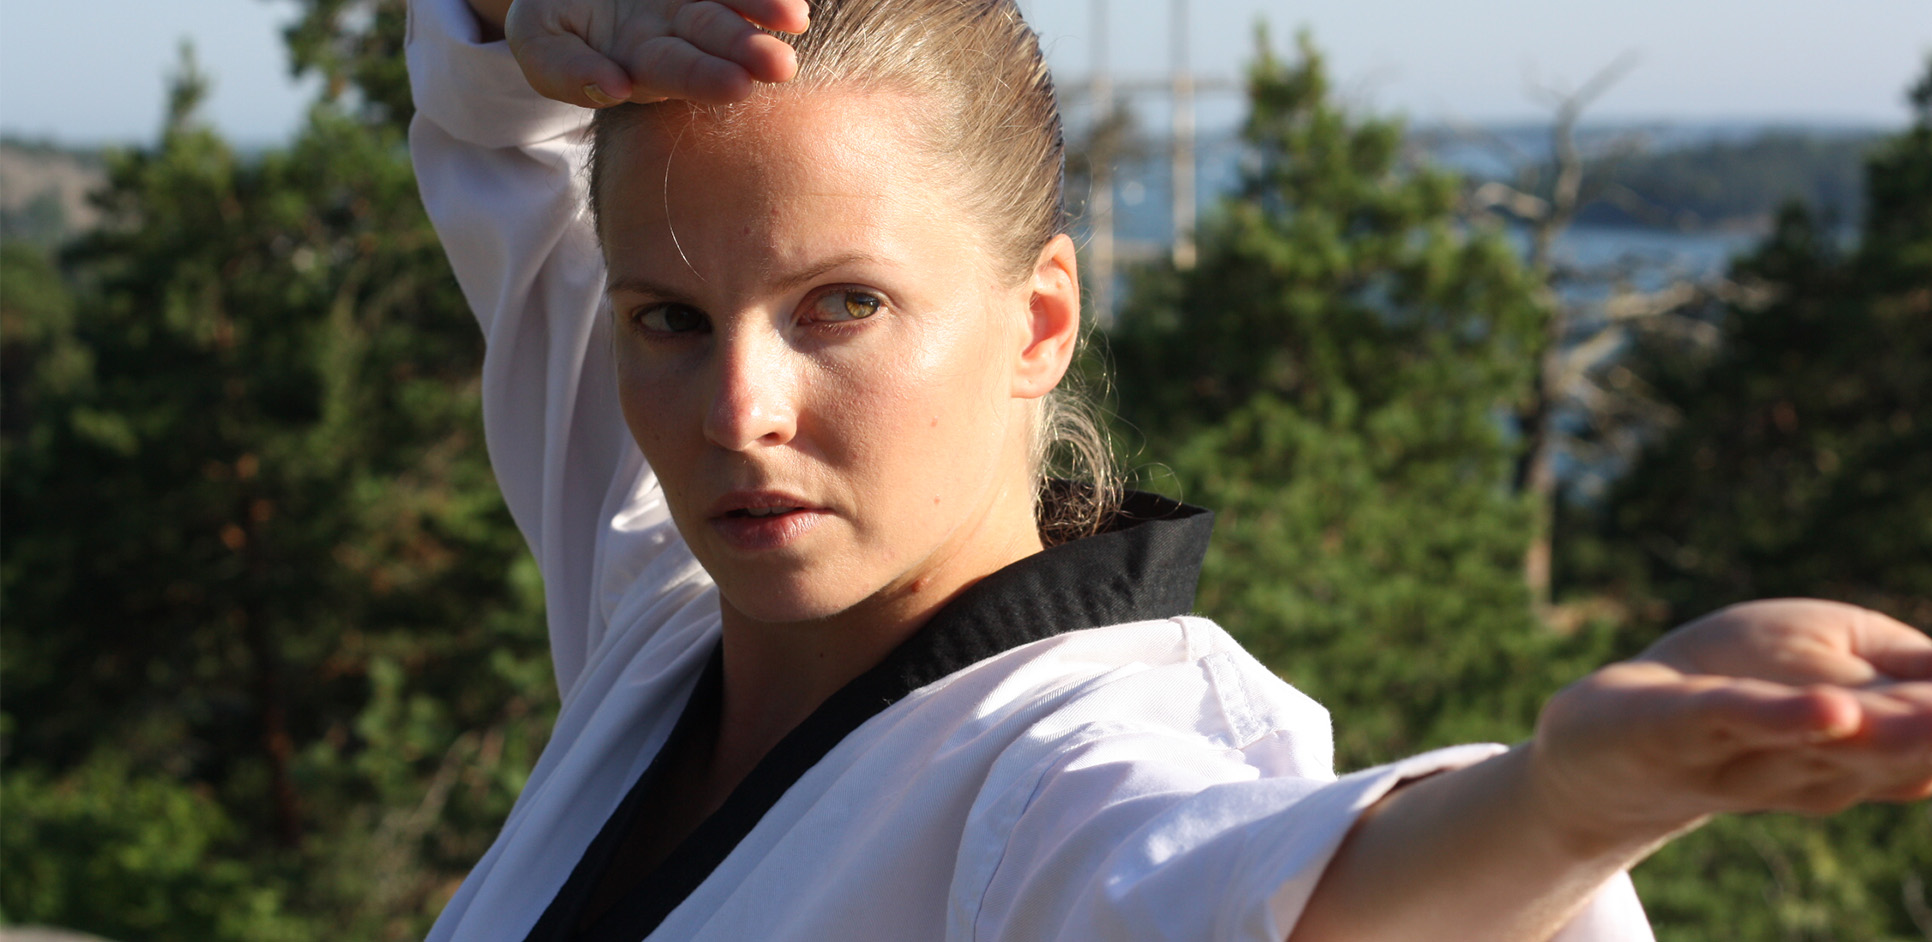 Instruktörer taekwondo